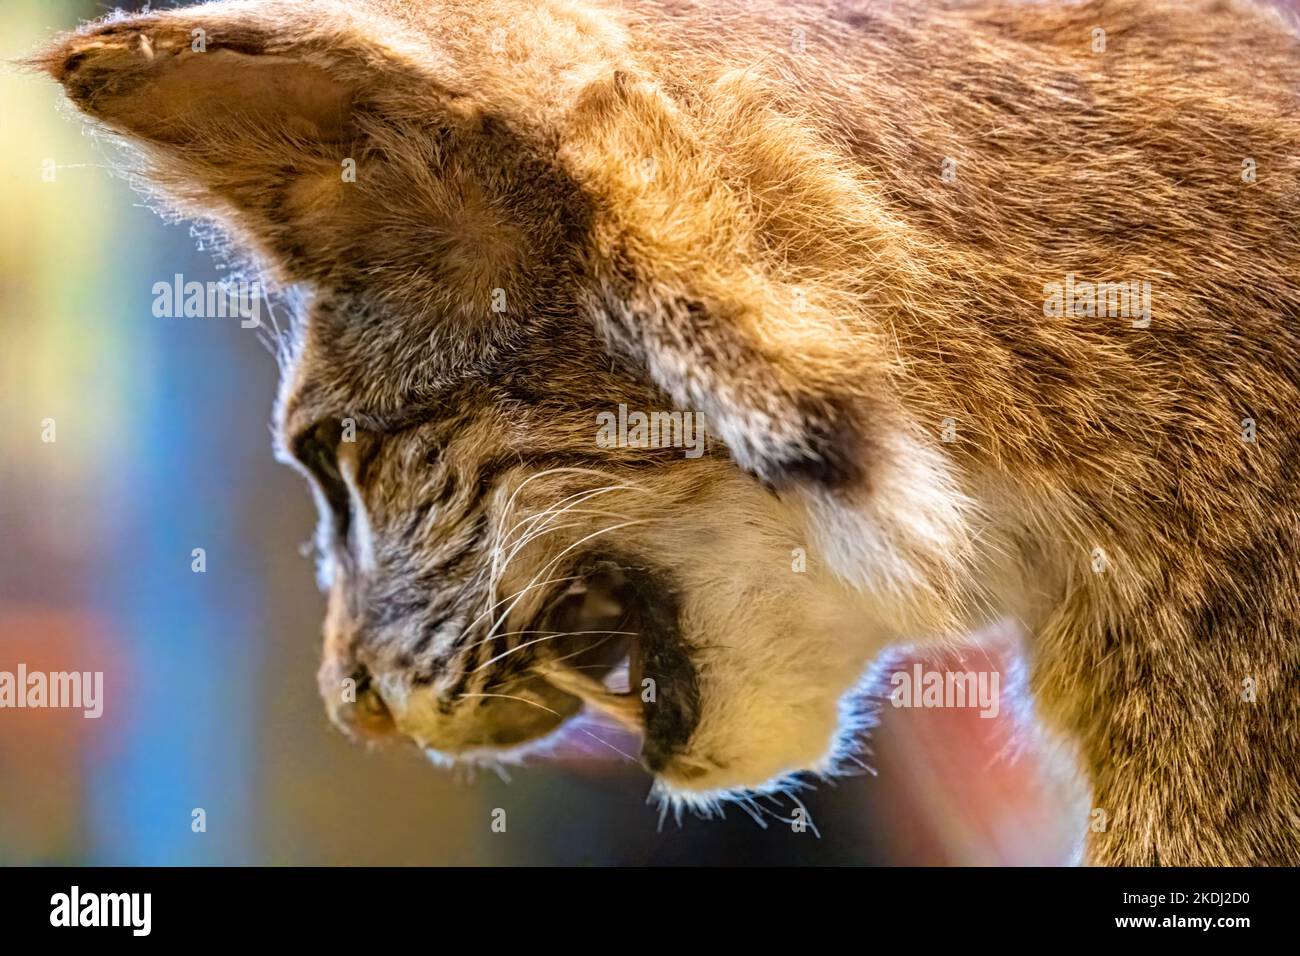 Gros plan du lynx roux de taxidermie (lynx roux) au centre d'accueil du parc national de Tallulah gorge, exposition sur la faune et la flore de Géorgie, à Tallulah Falls, en Géorgie. (ÉTATS-UNIS) Banque D'Images